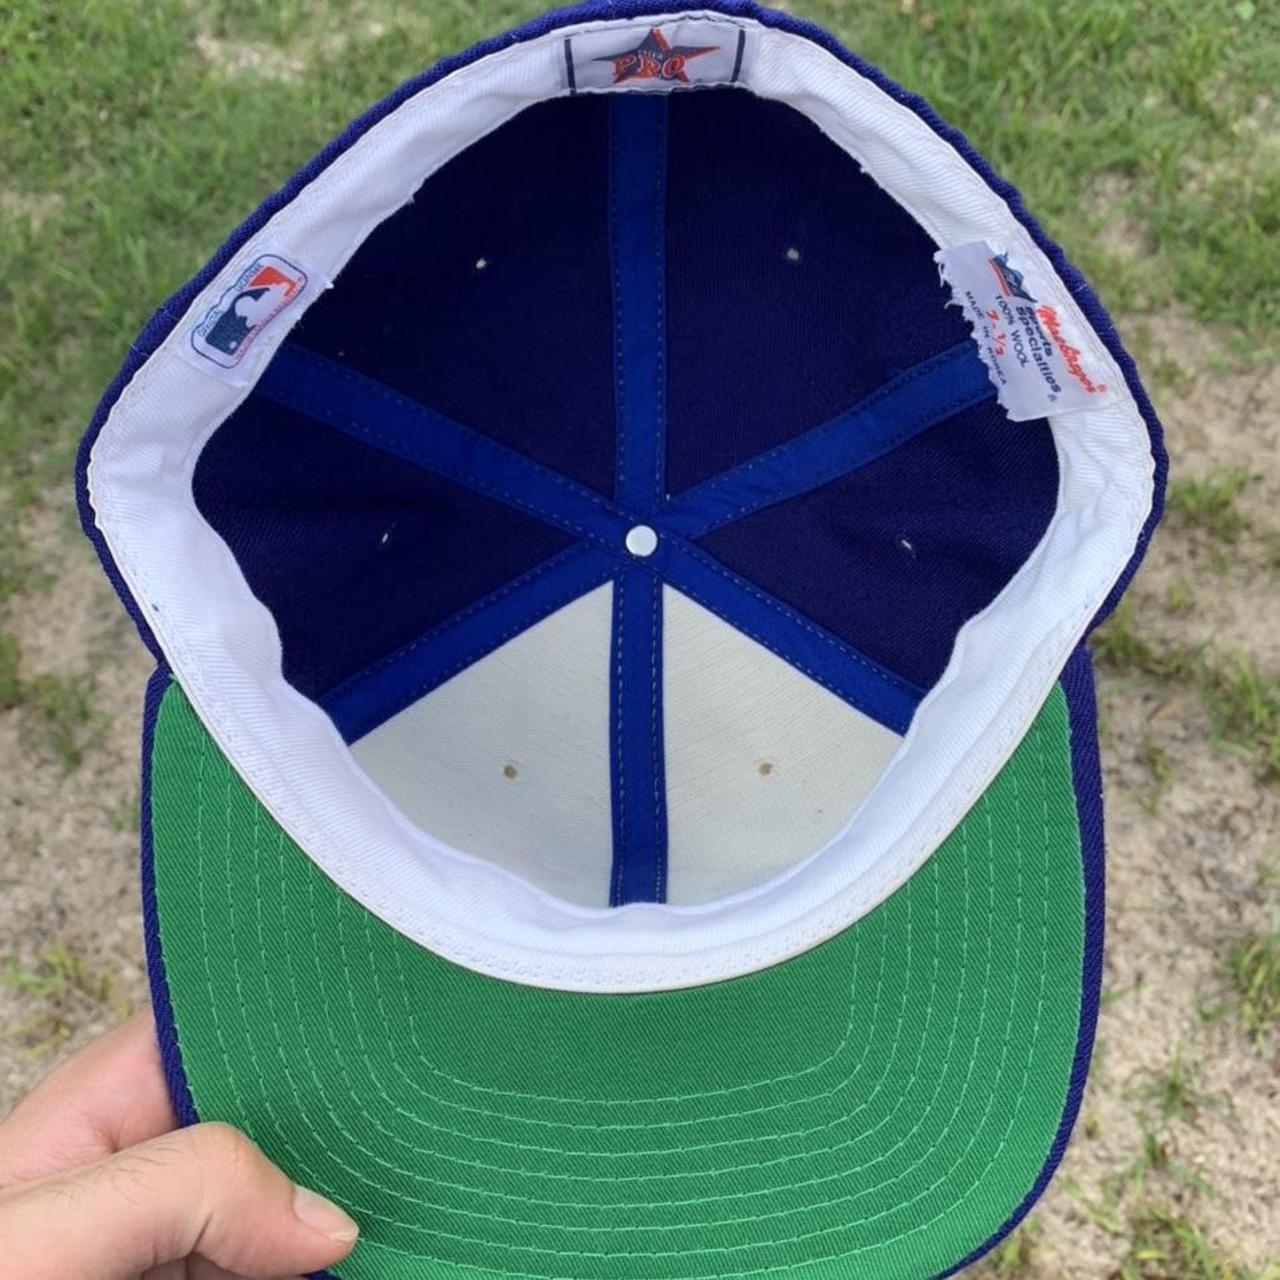 Vintage Blue jays Baseball Embroidered Hat Cap. - Depop